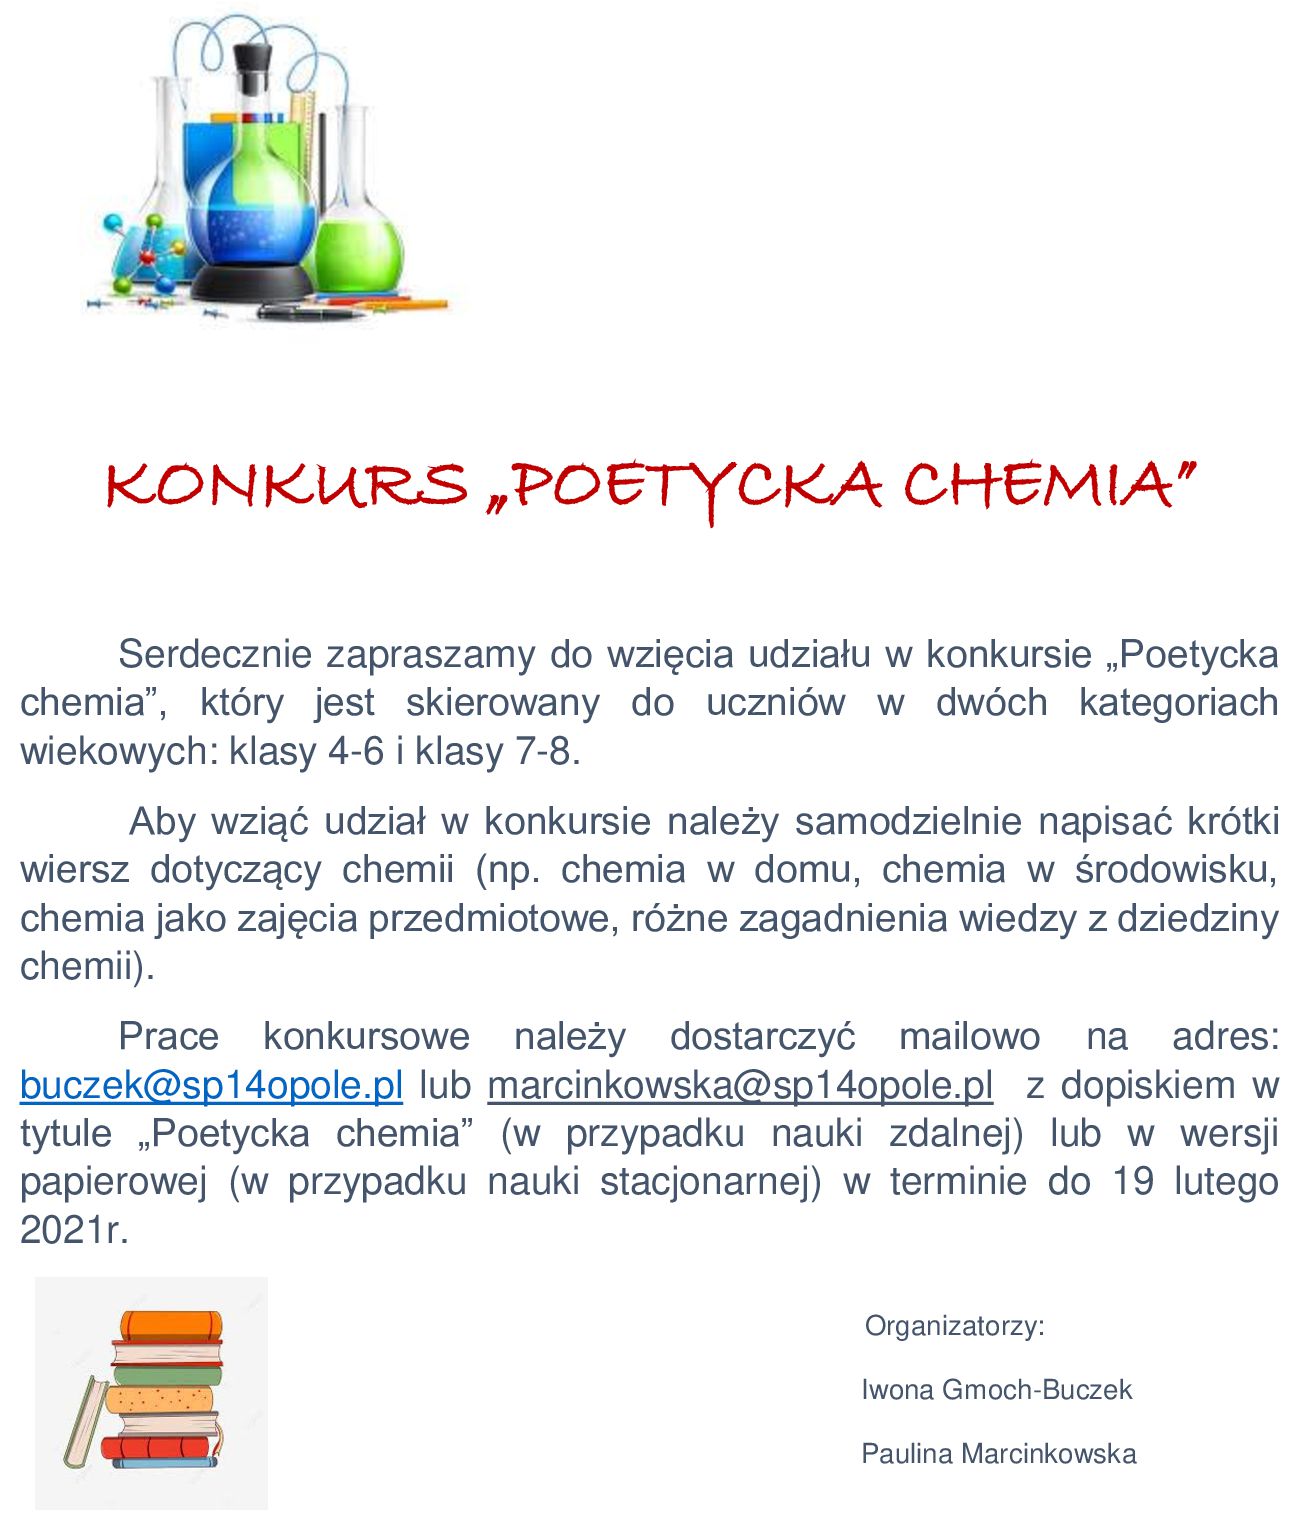 Konkurs "Poetycka chemia"